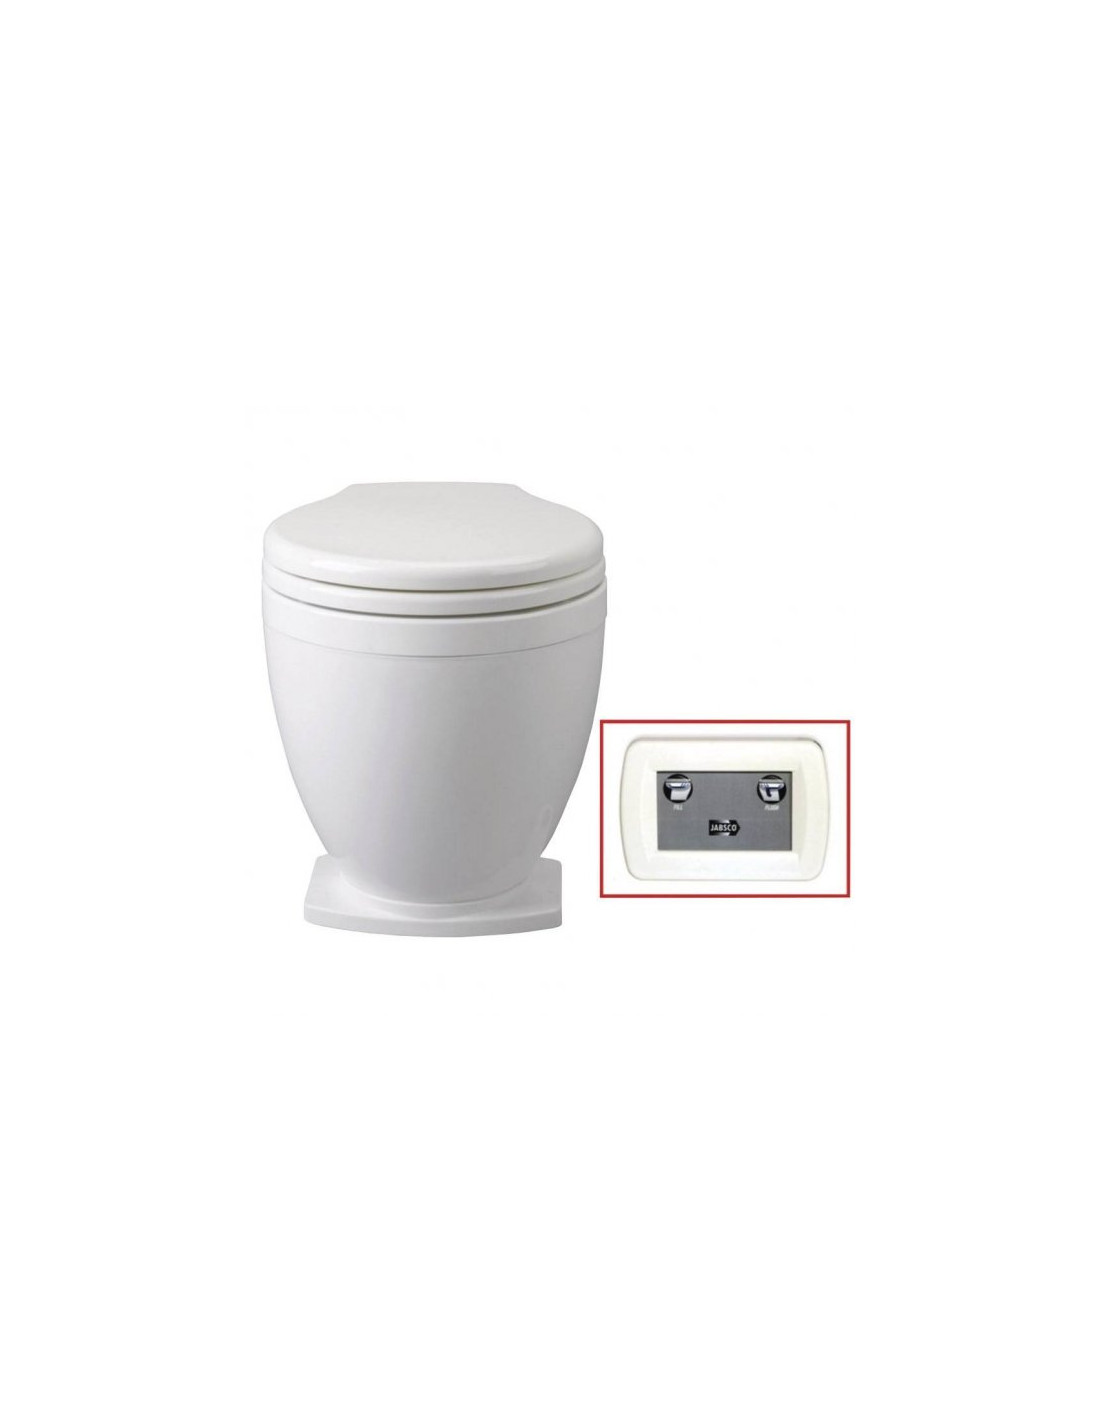 WC électrique Lite Flush + interrupteur tableau